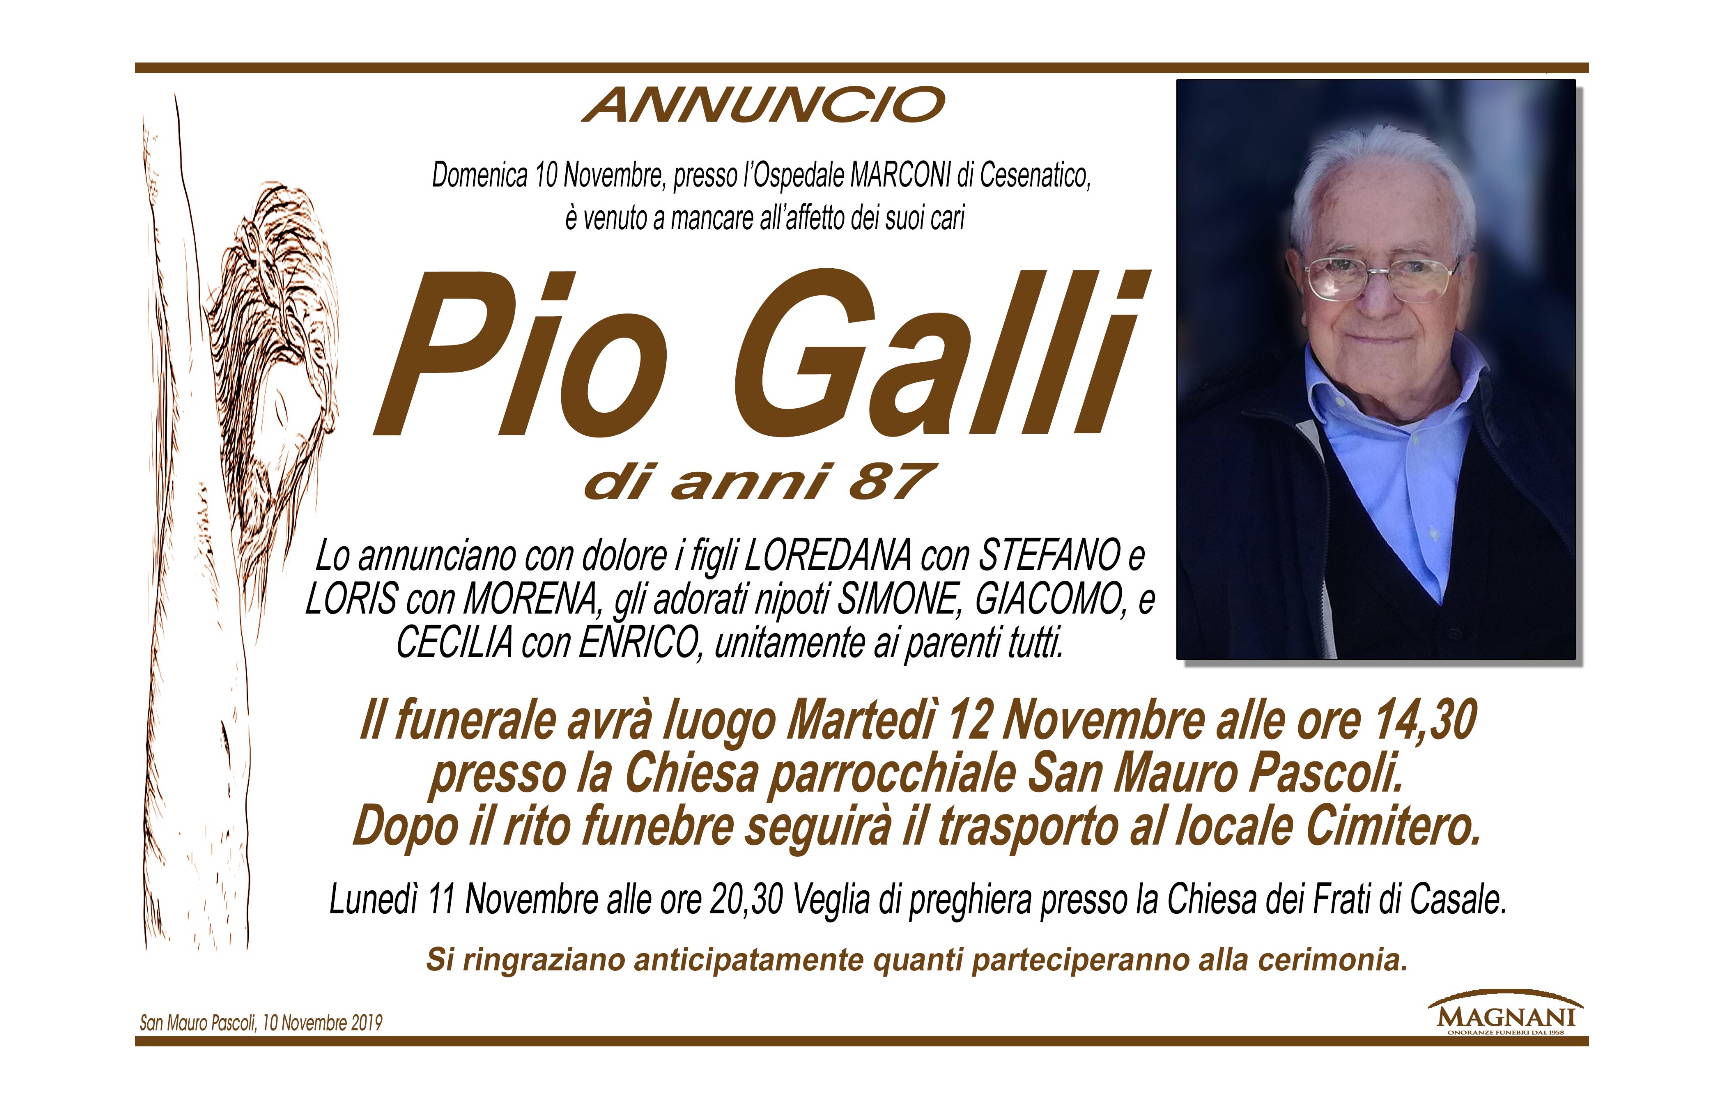 Pio Galli